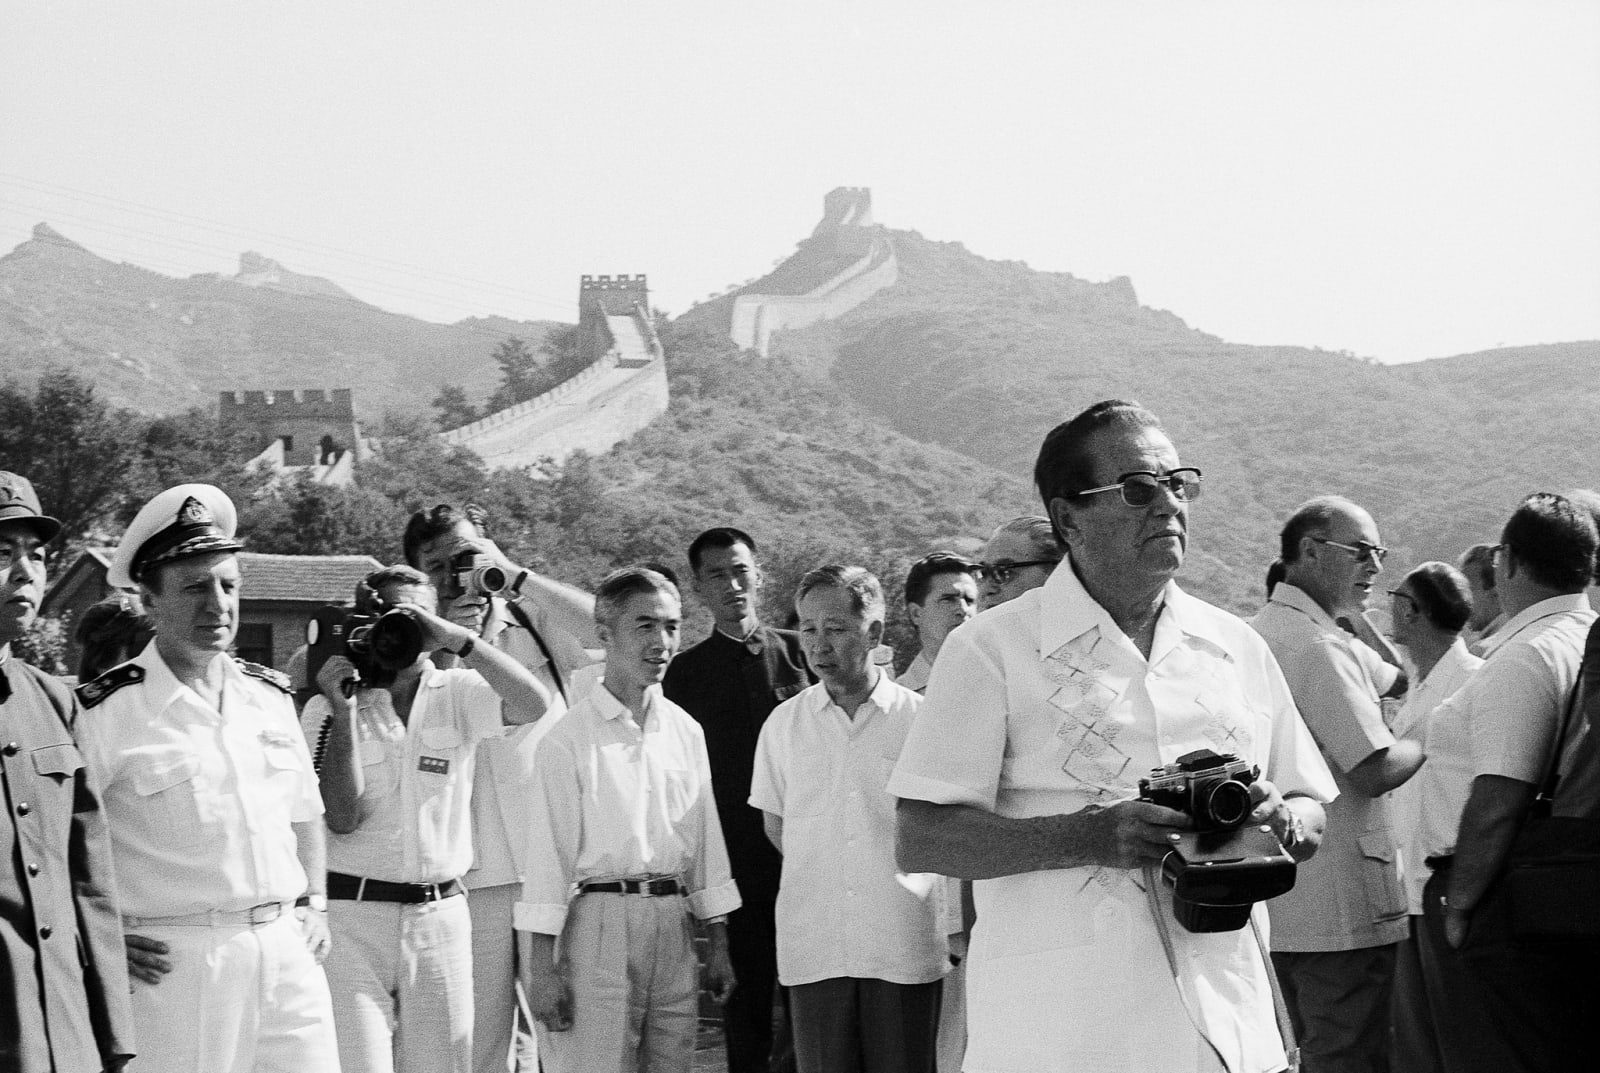 Joco Žnidaršič, Kitajski zid IV / The Great Wall of China IV, 1977